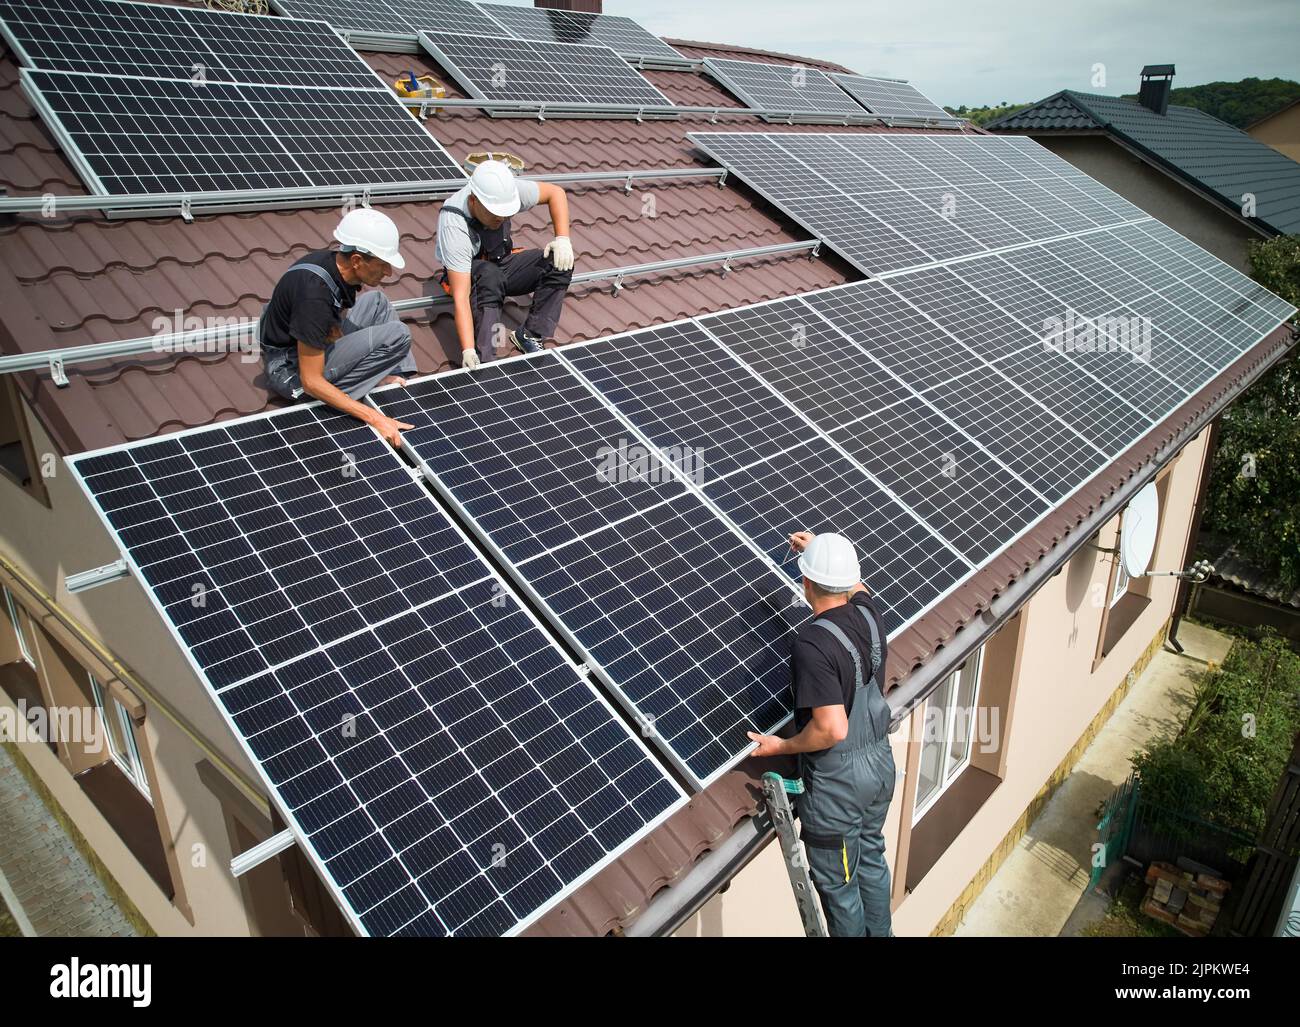 Hommes installateurs montage de modules solaires photovoltaïques sur le toit de la maison. Ingénieurs en casques installant un système de panneaux solaires à l'extérieur. Concept d'énergie alternative et renouvelable. Vue aérienne. Banque D'Images